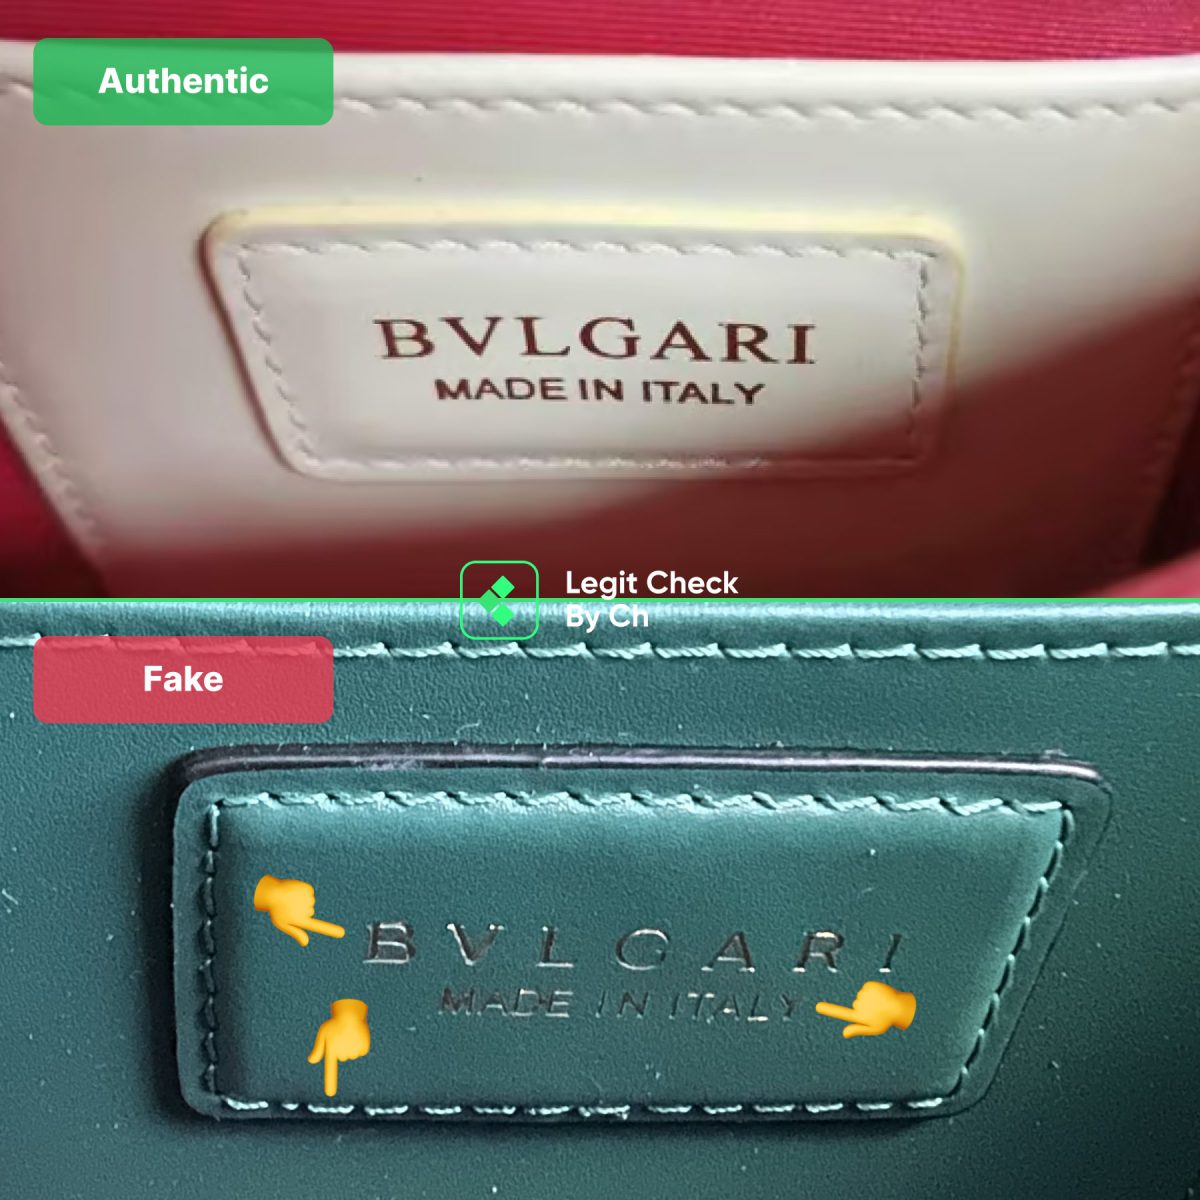 Bvlgari Bag Interior Label